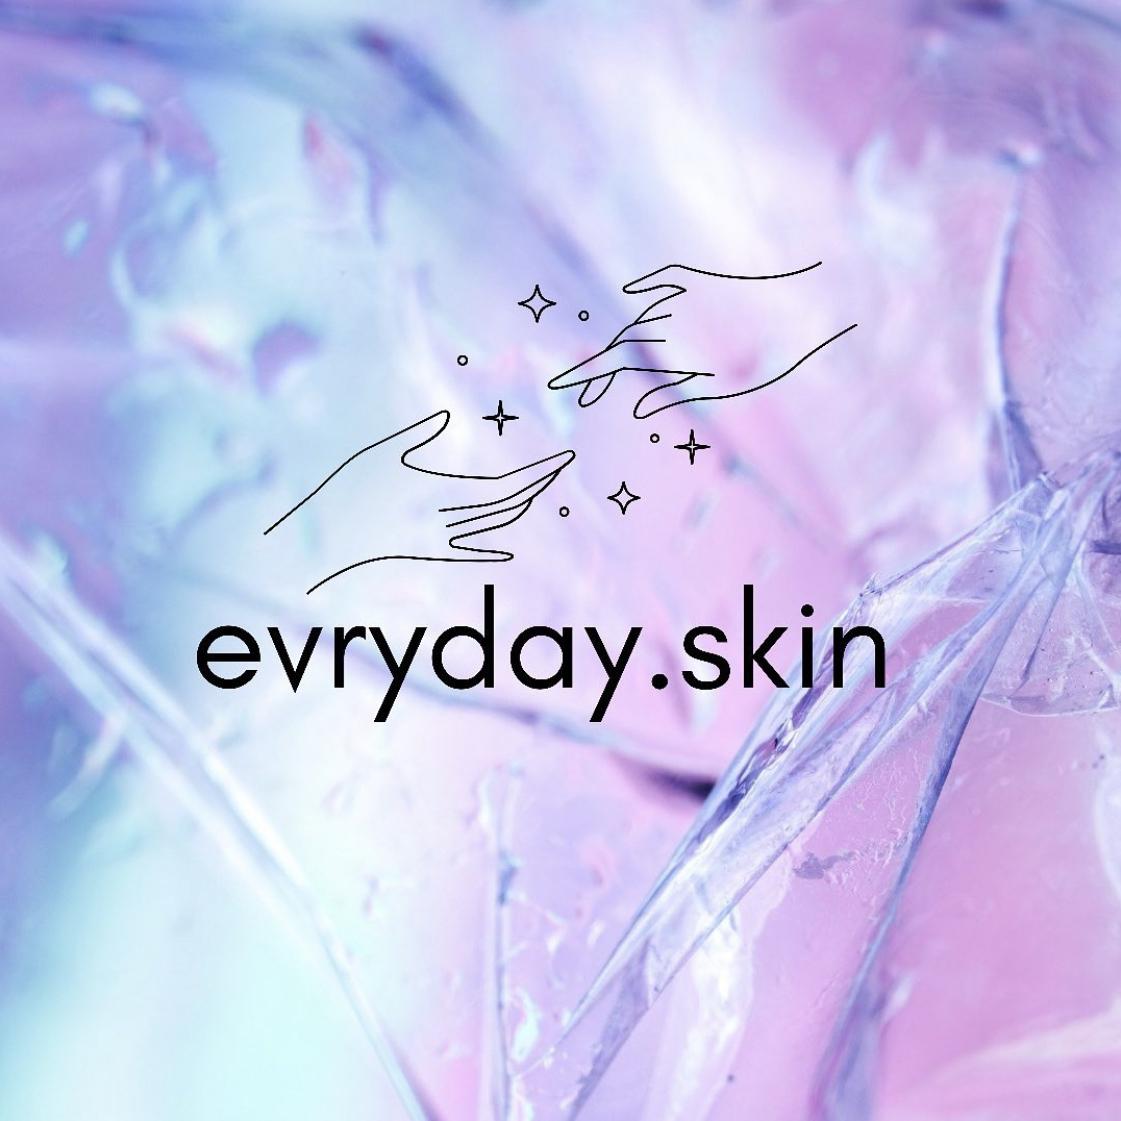 evryday.skin's images